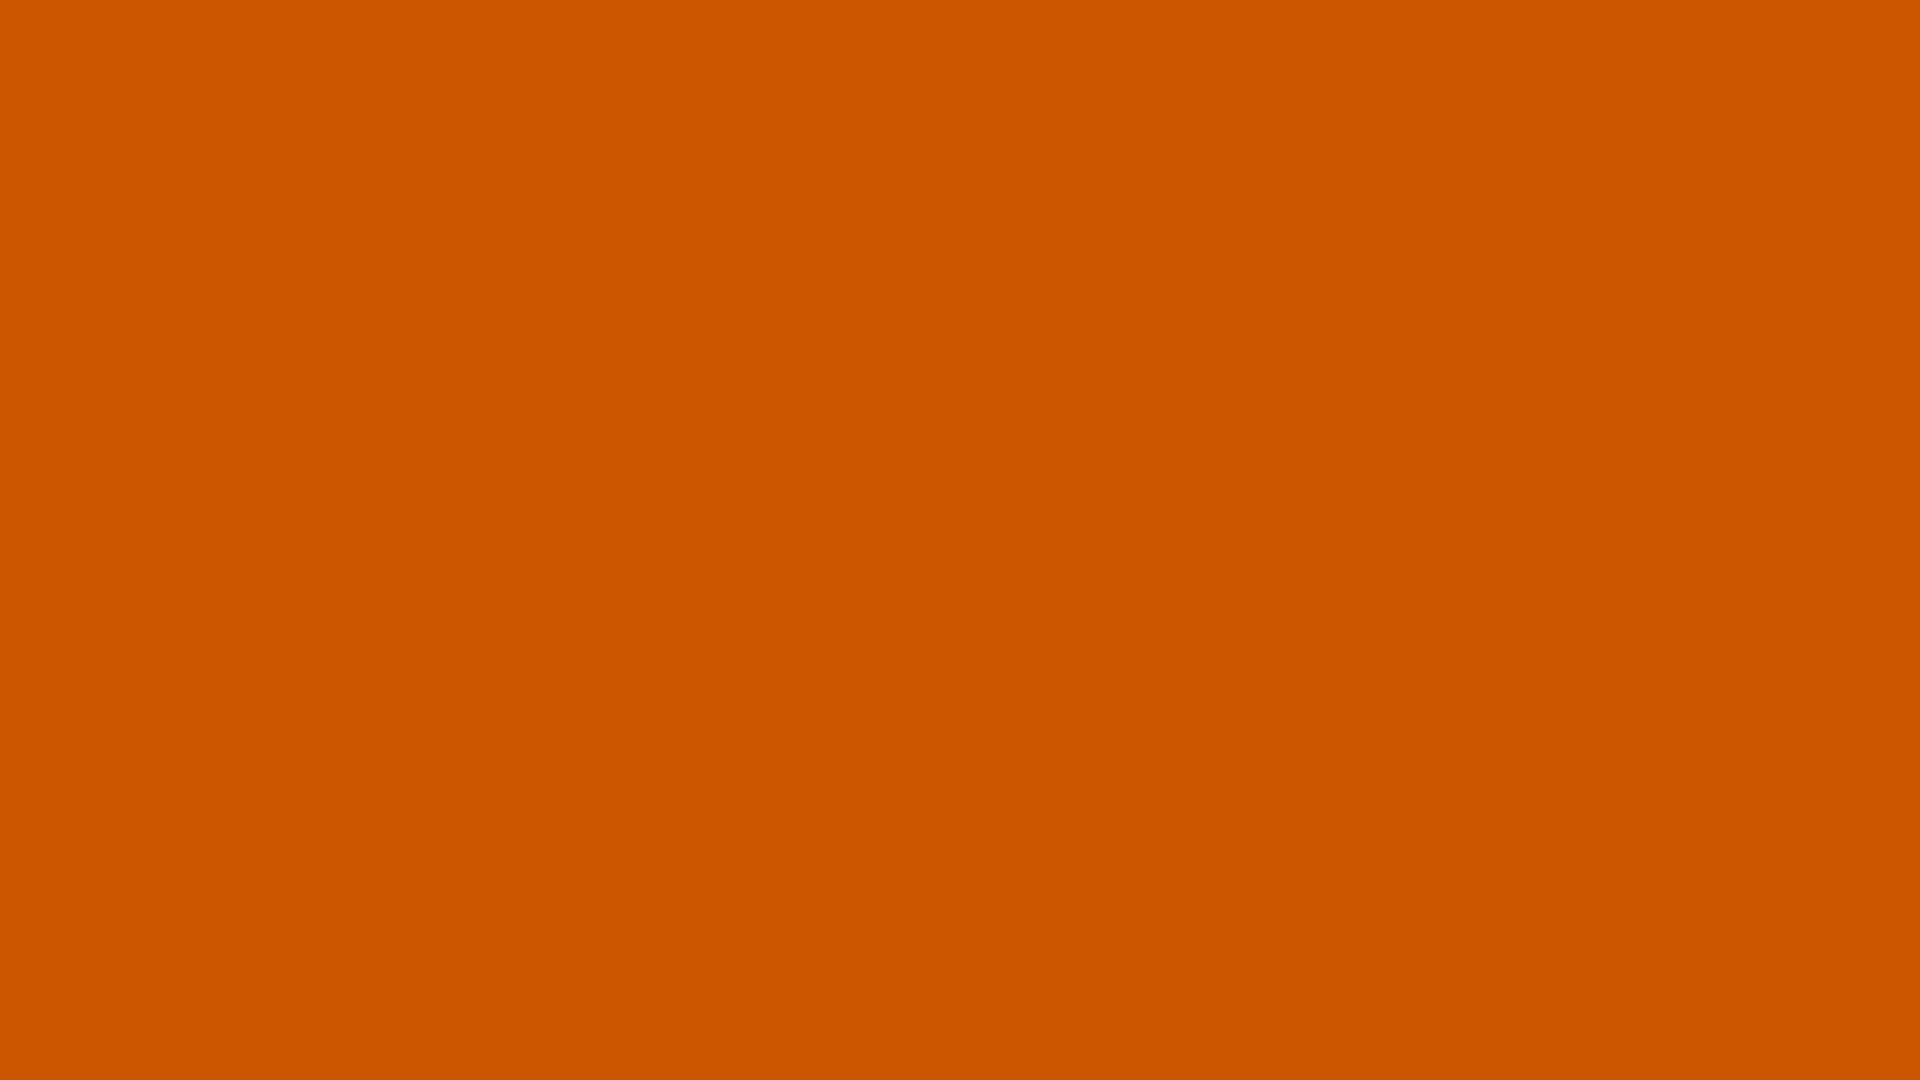 1920 x 1080 · jpeg - 1920x1080 Burnt Orange Solid Color Background